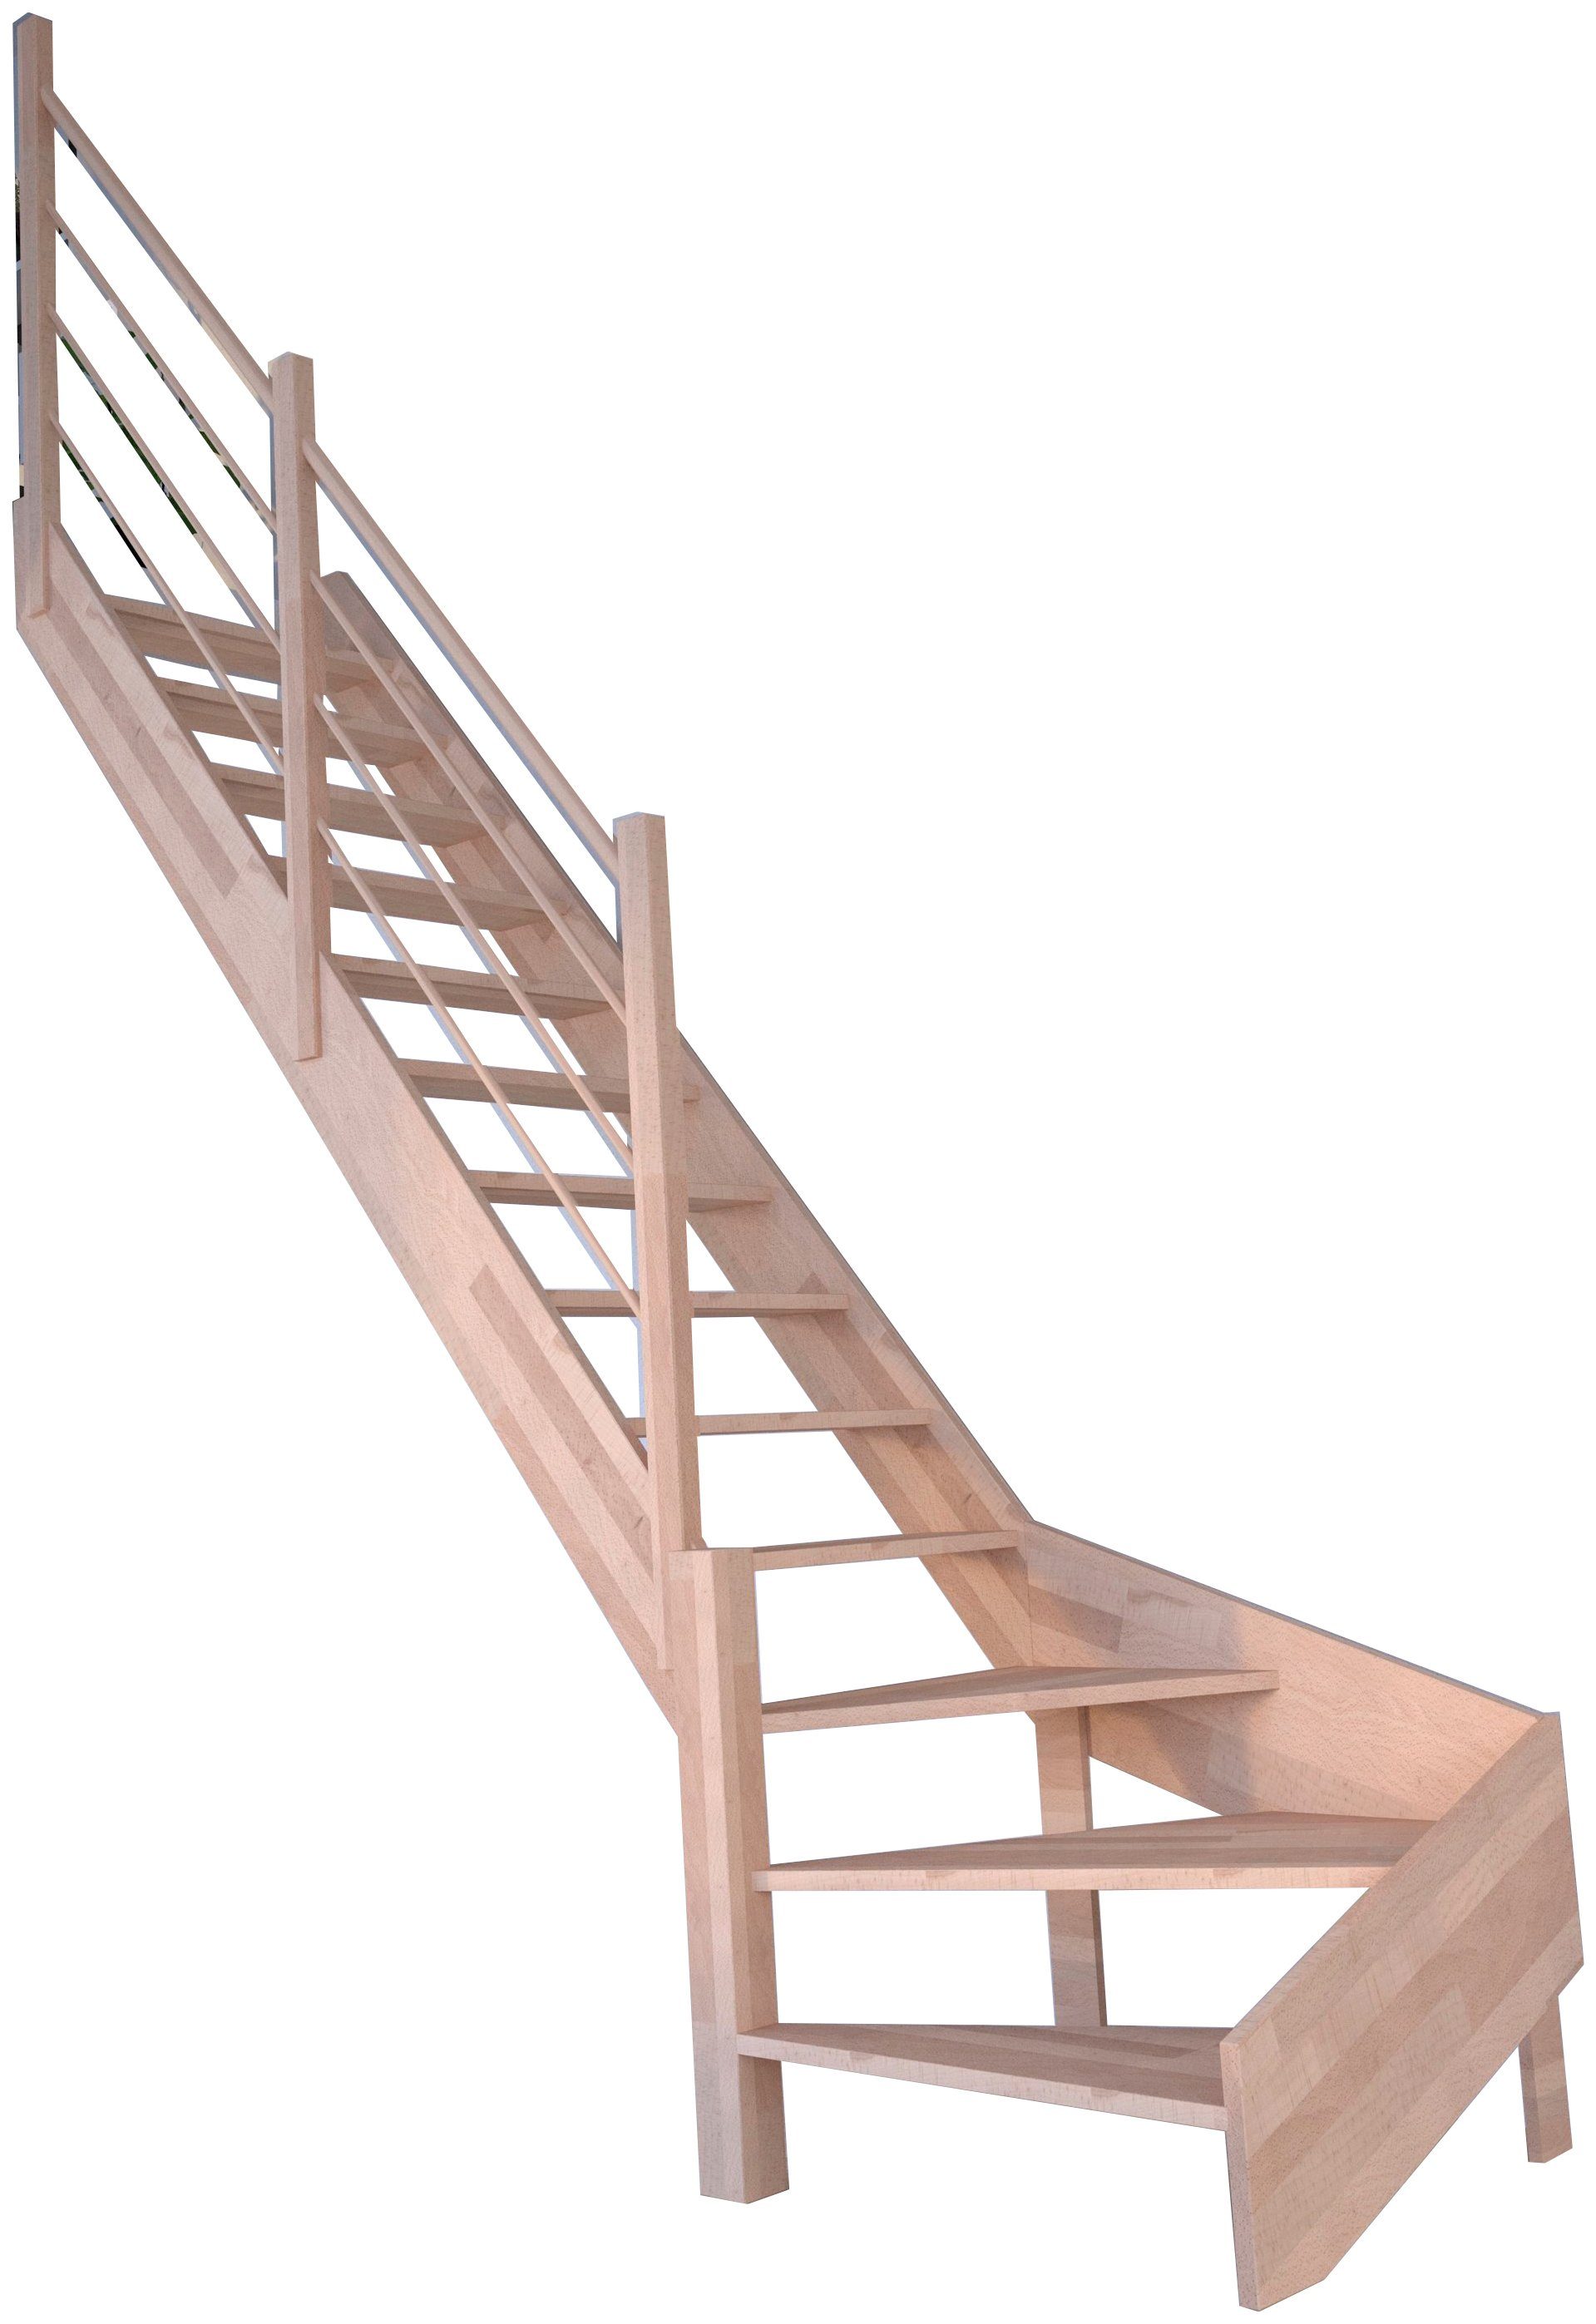 Holz-Holz für Rhodos, Design Geschosshöhen Links, cm, bis Raumspartreppe 300 Stufen offen, Durchgehende Geländer, gewendelt Wangenteile Massivholz Starwood